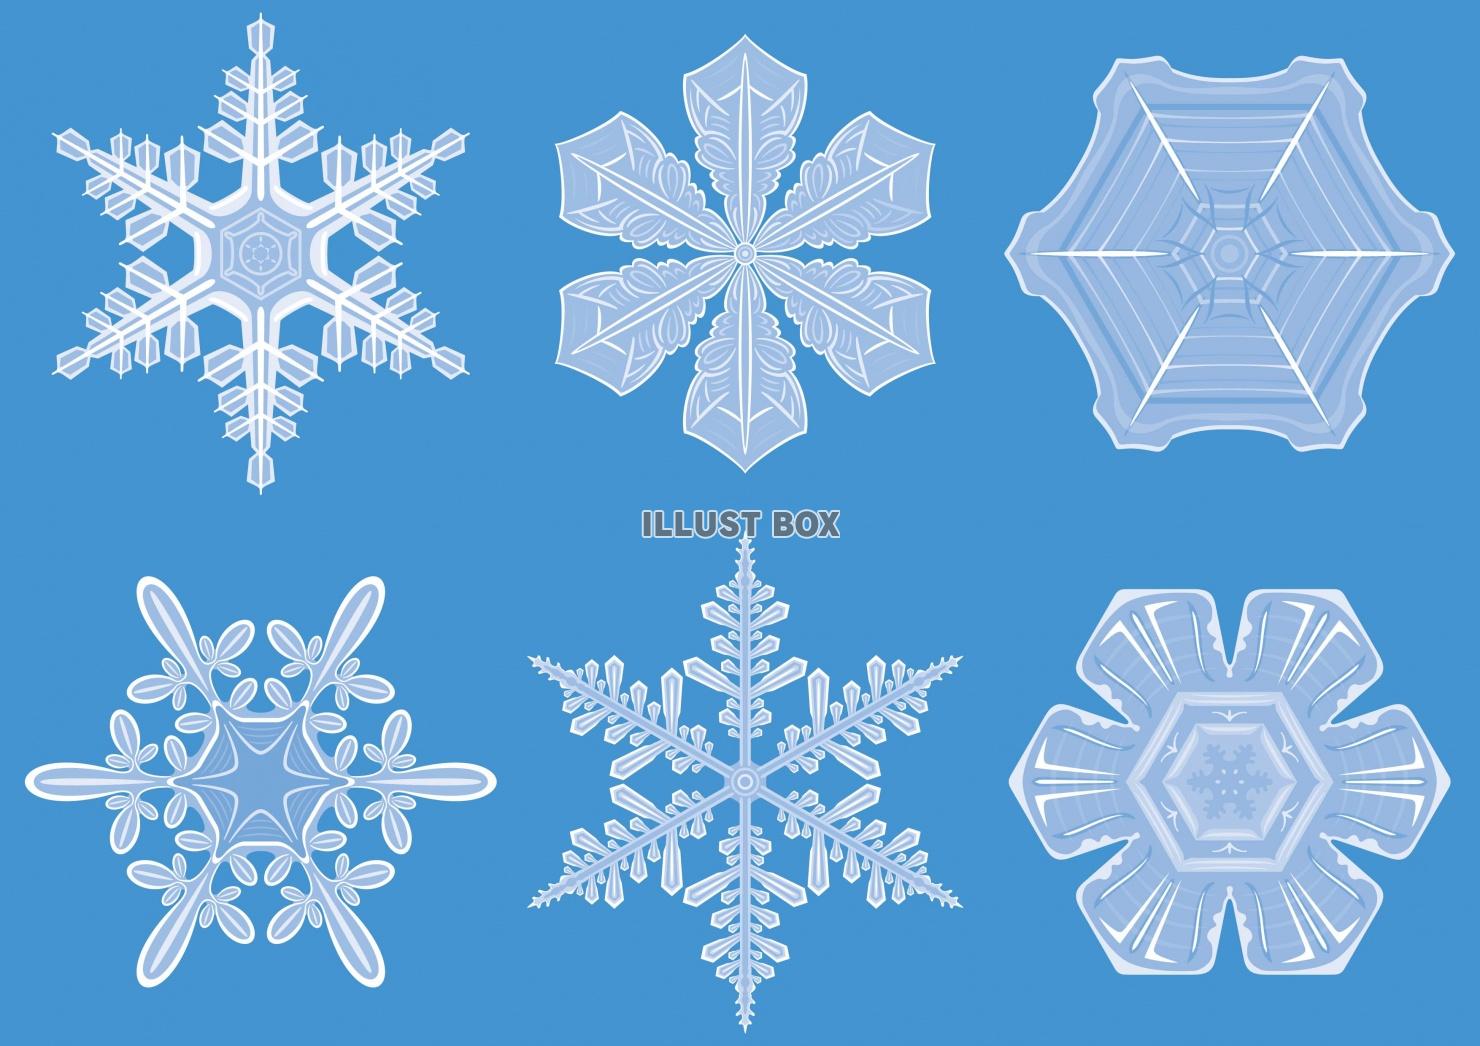 無料イラスト 雪の結晶 雪華 冬のイメージ セット